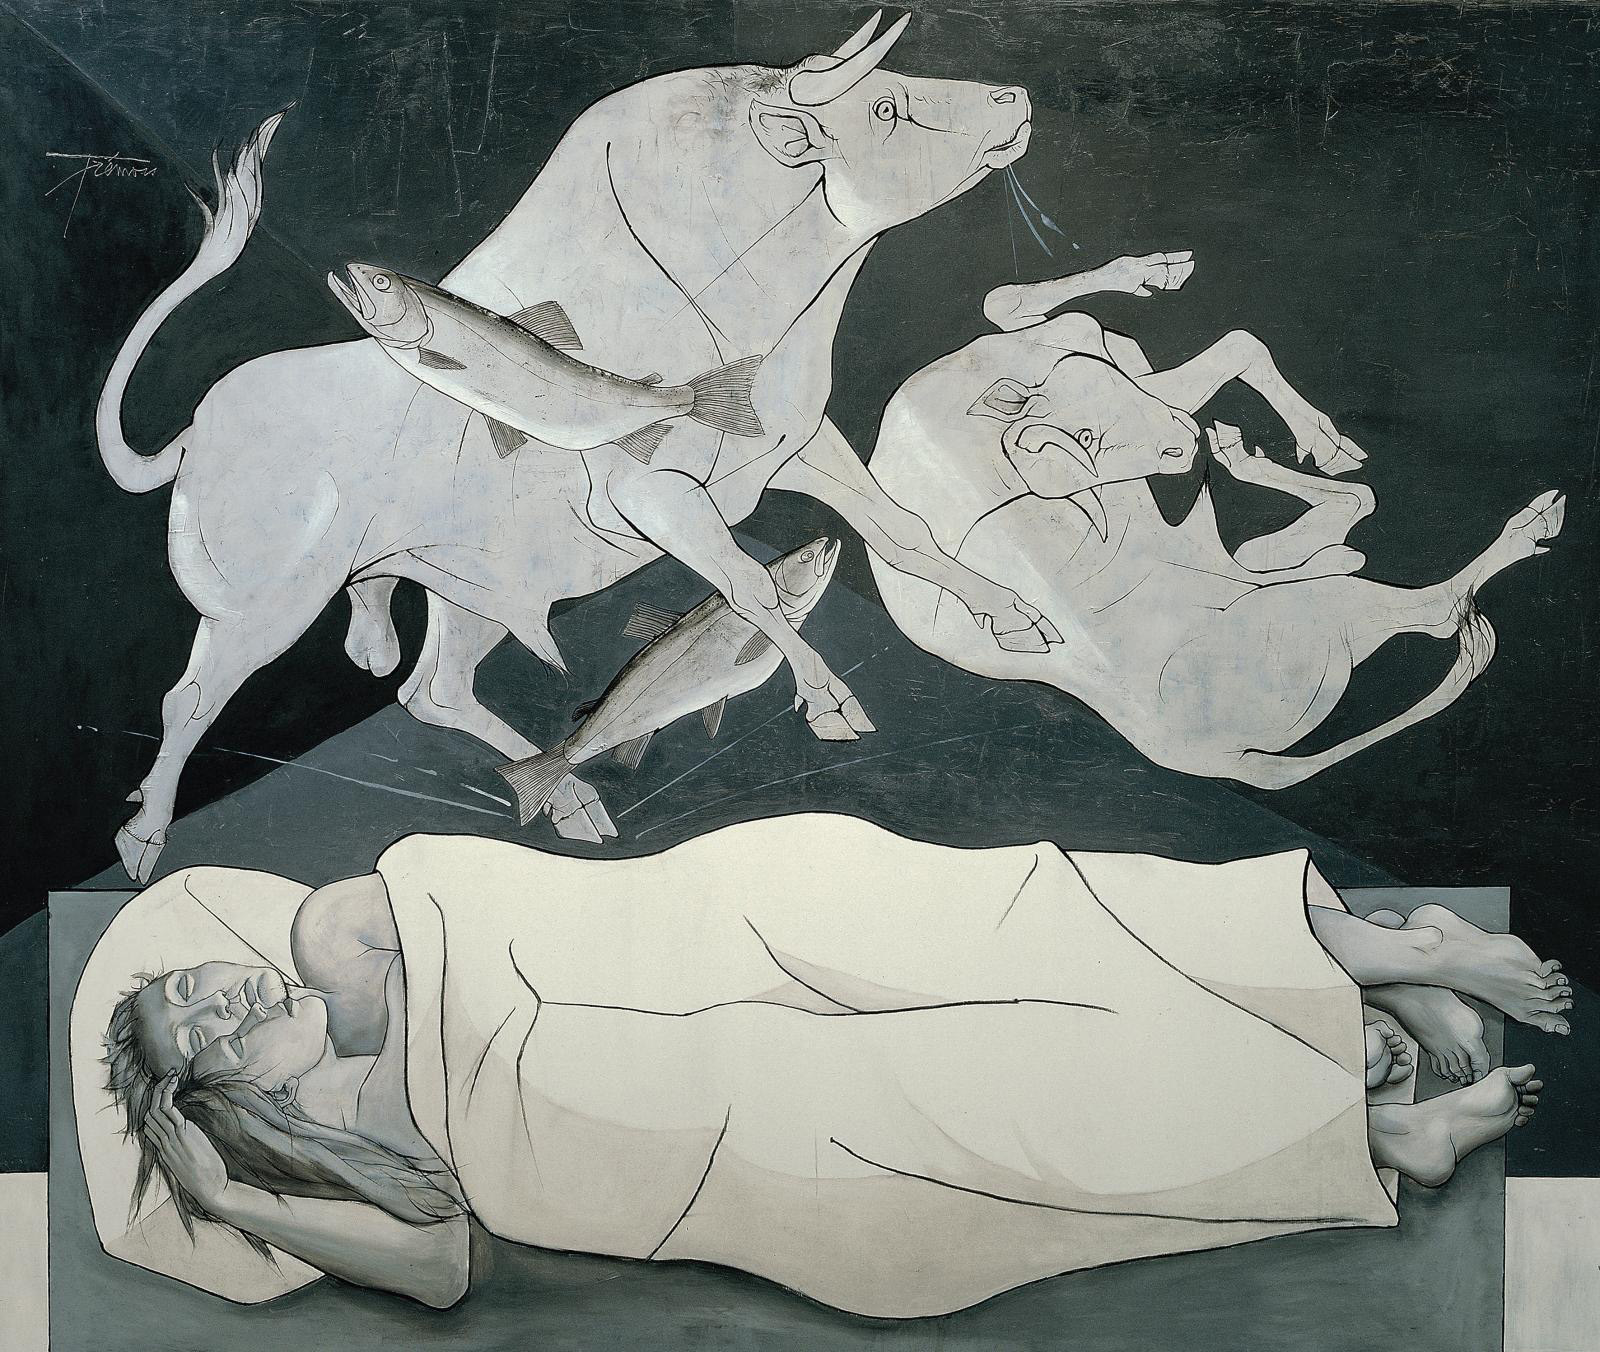 Pierre-Yves Trémois: The Bestiary of a Dream